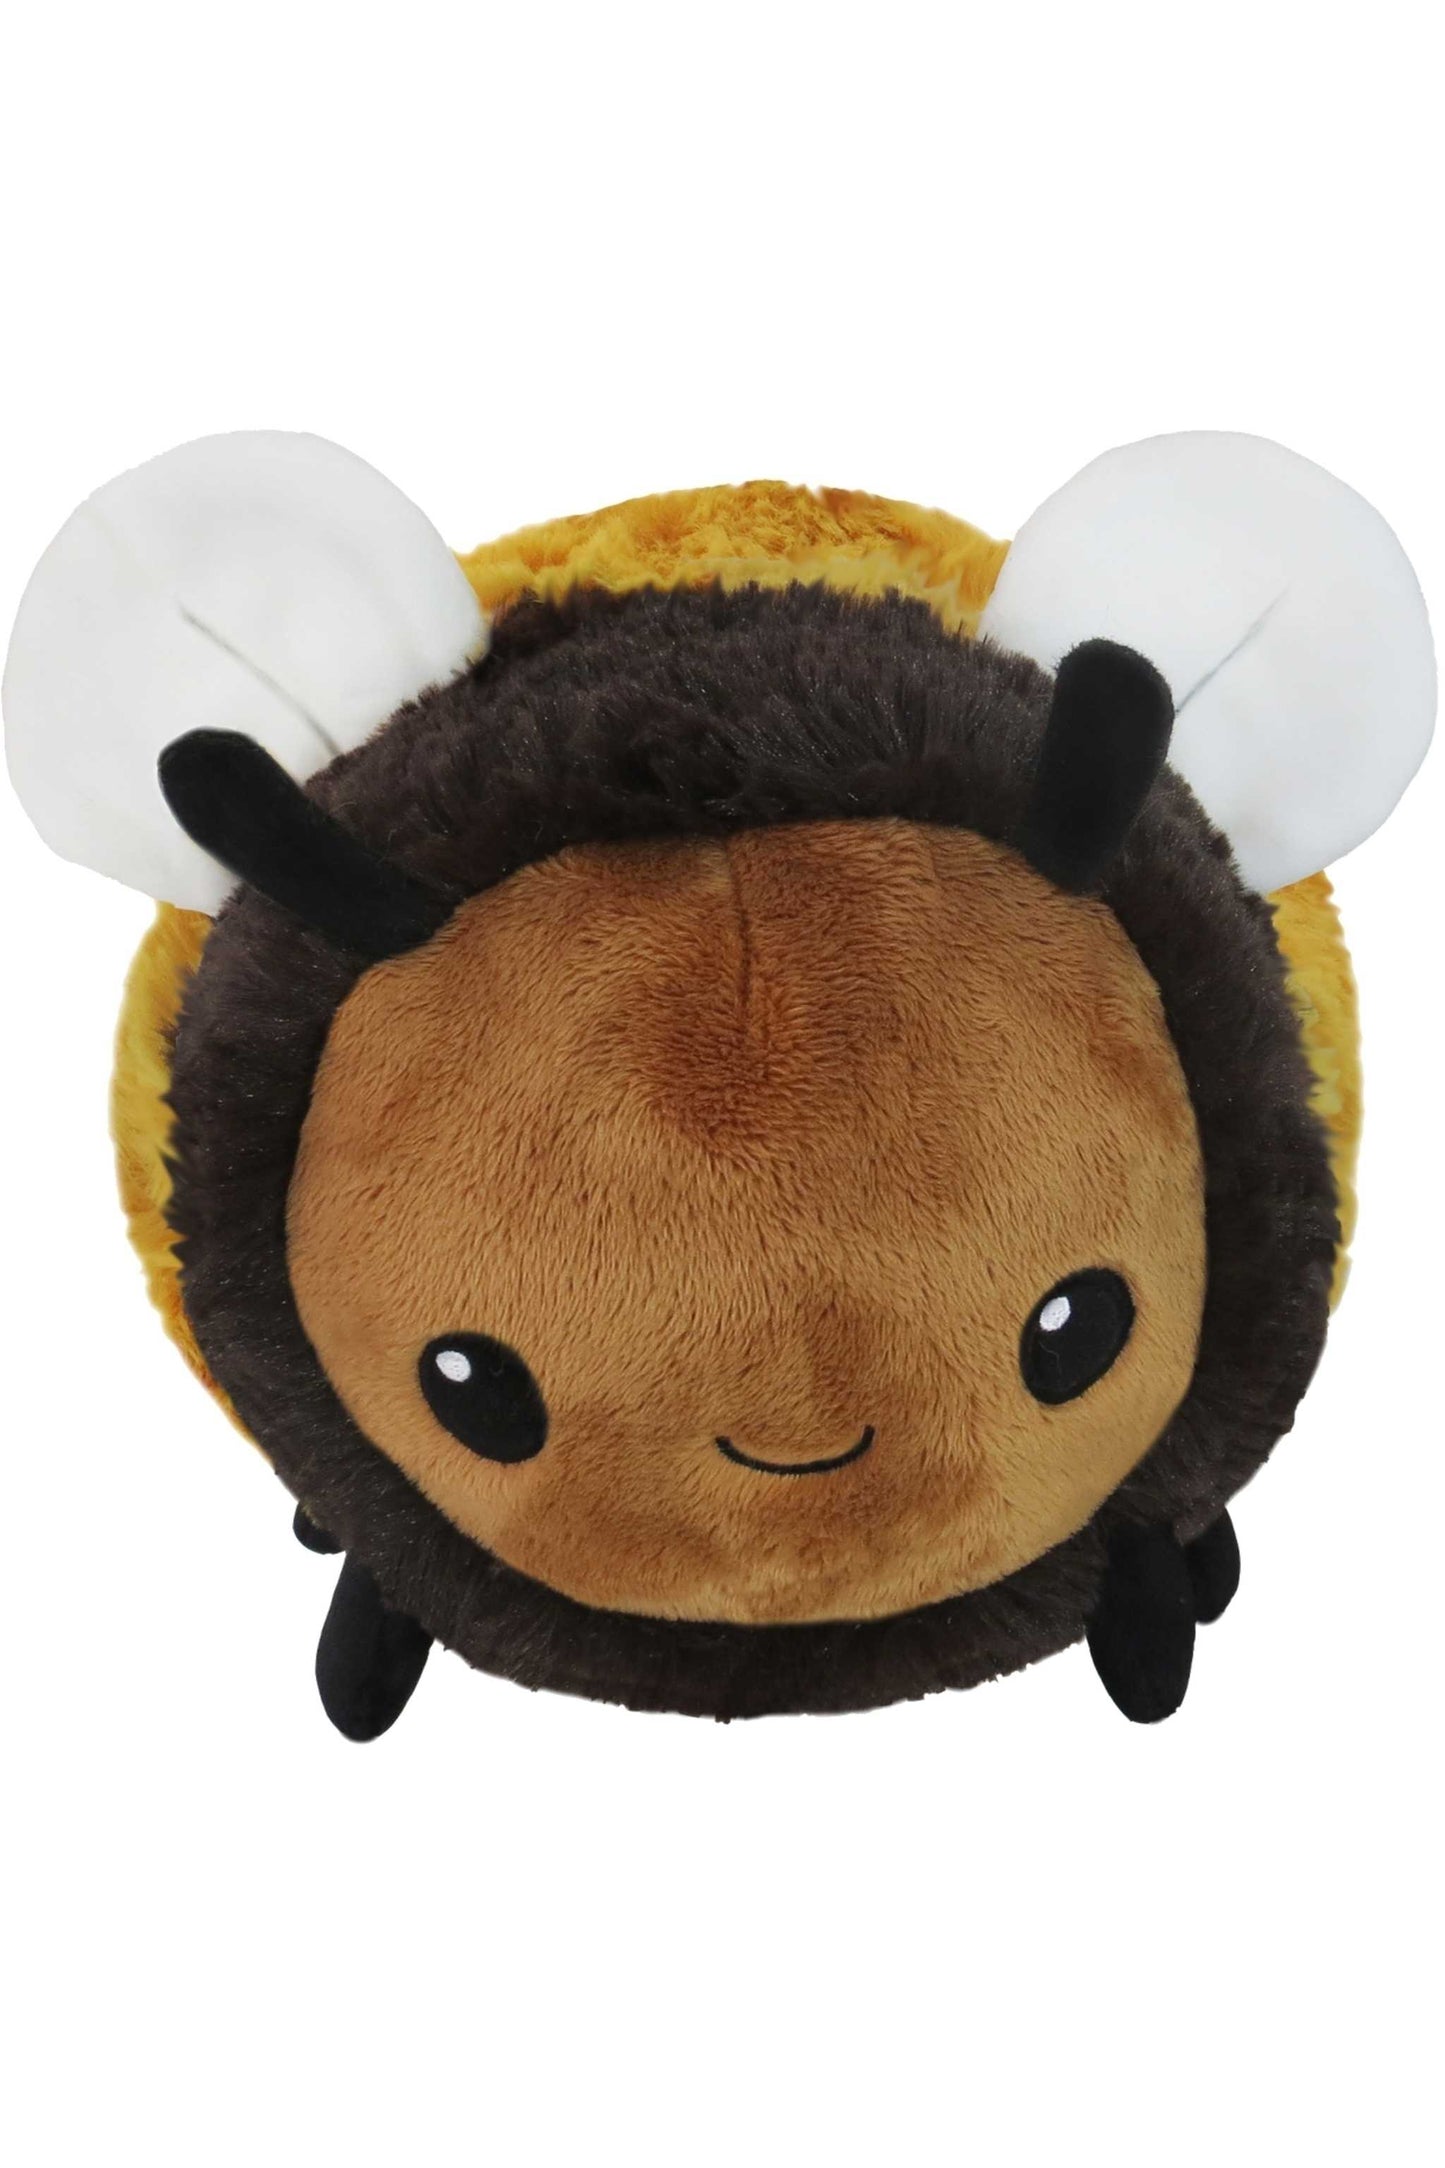 Honey bee stuffed animal.  